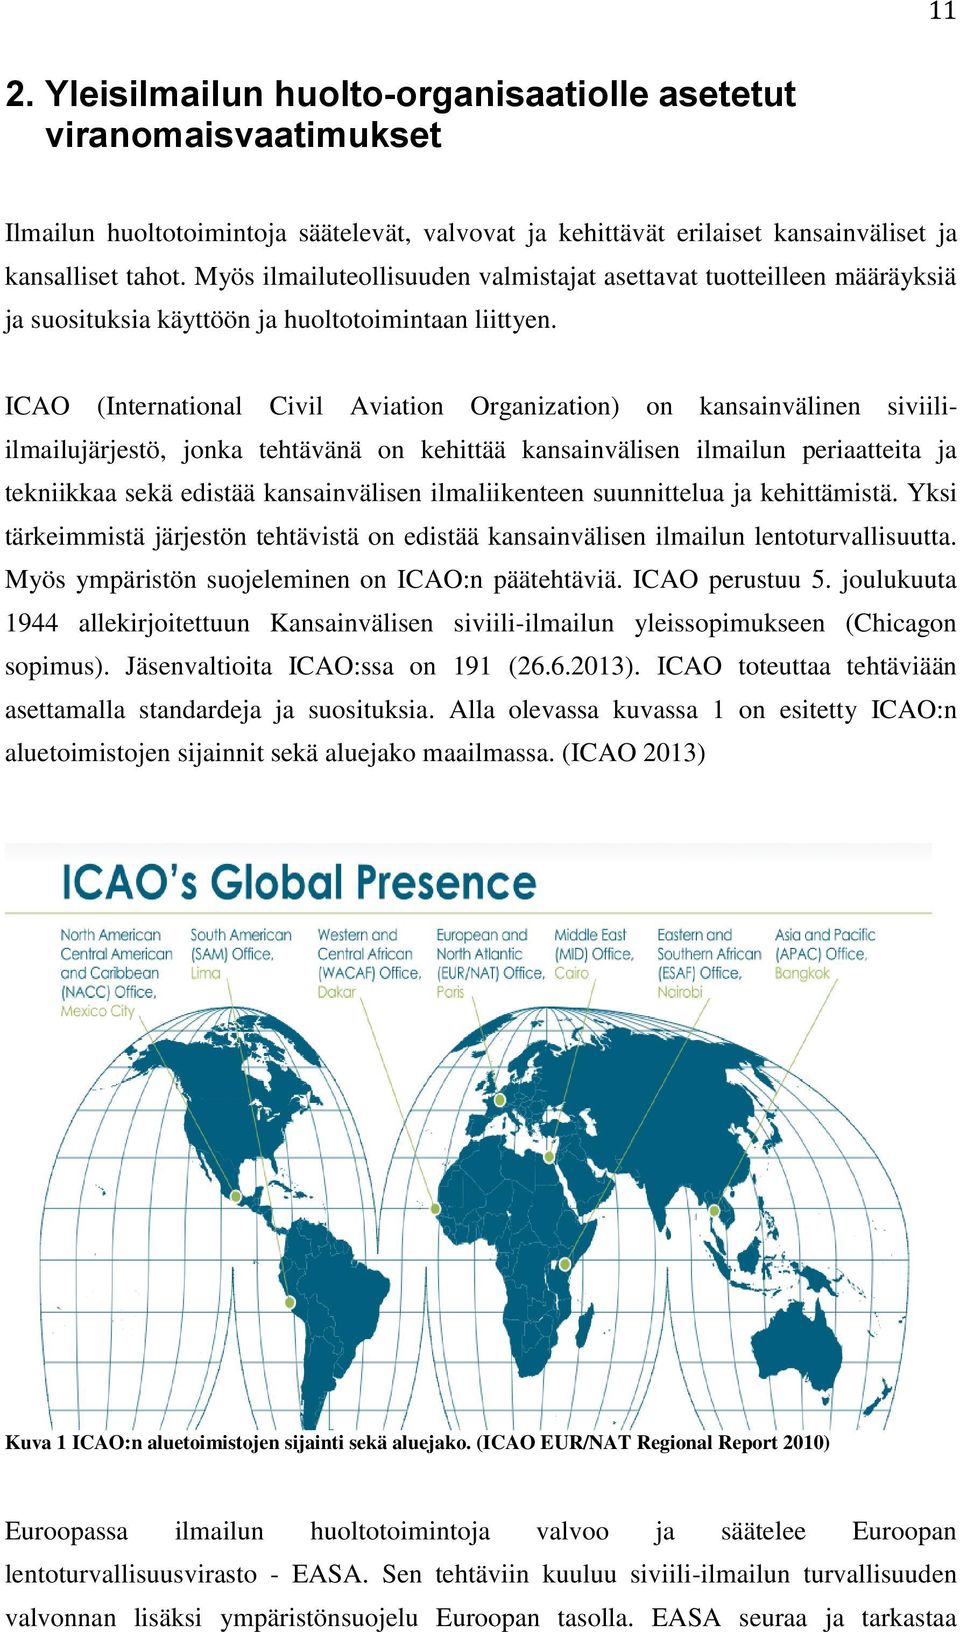 ICAO (International Civil Aviation Organization) on kansainvälinen siviiliilmailujärjestö, jonka tehtävänä on kehittää kansainvälisen ilmailun periaatteita ja tekniikkaa sekä edistää kansainvälisen